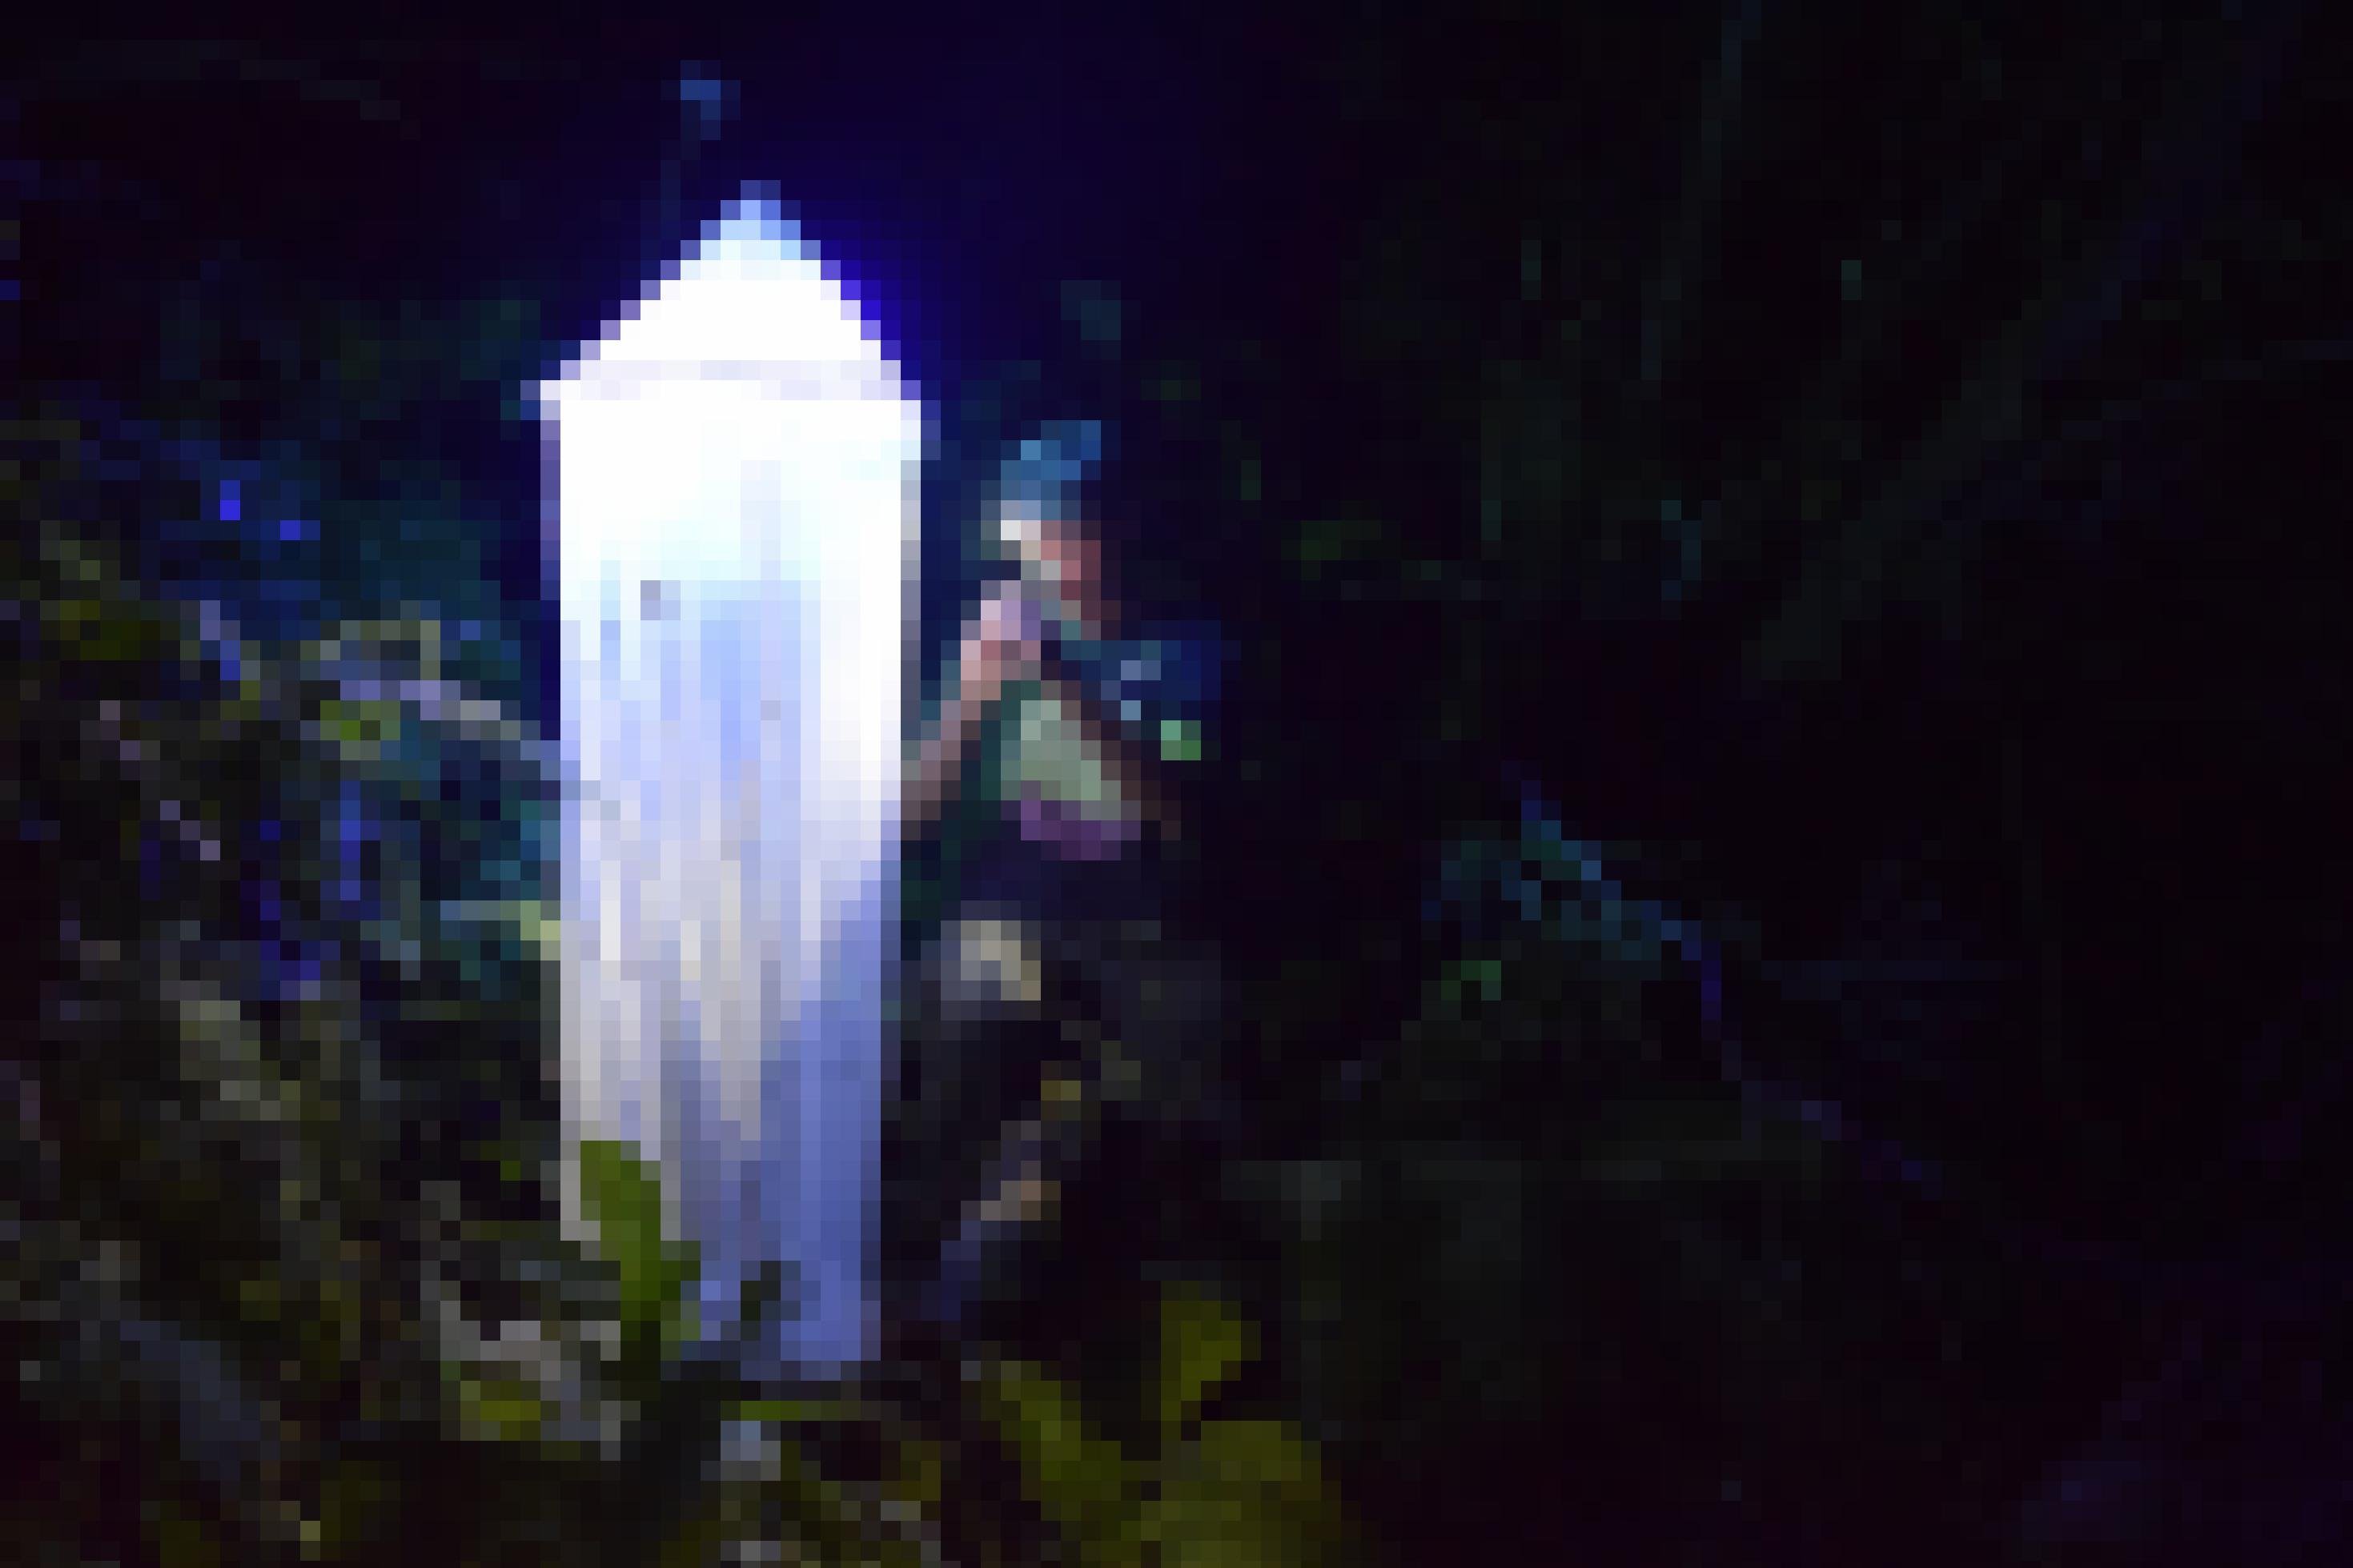 Ein junger Mann nachts in einem tropischen Wald: links ein großes, kegelförmiges Netz, das von innen beleuchtet ist